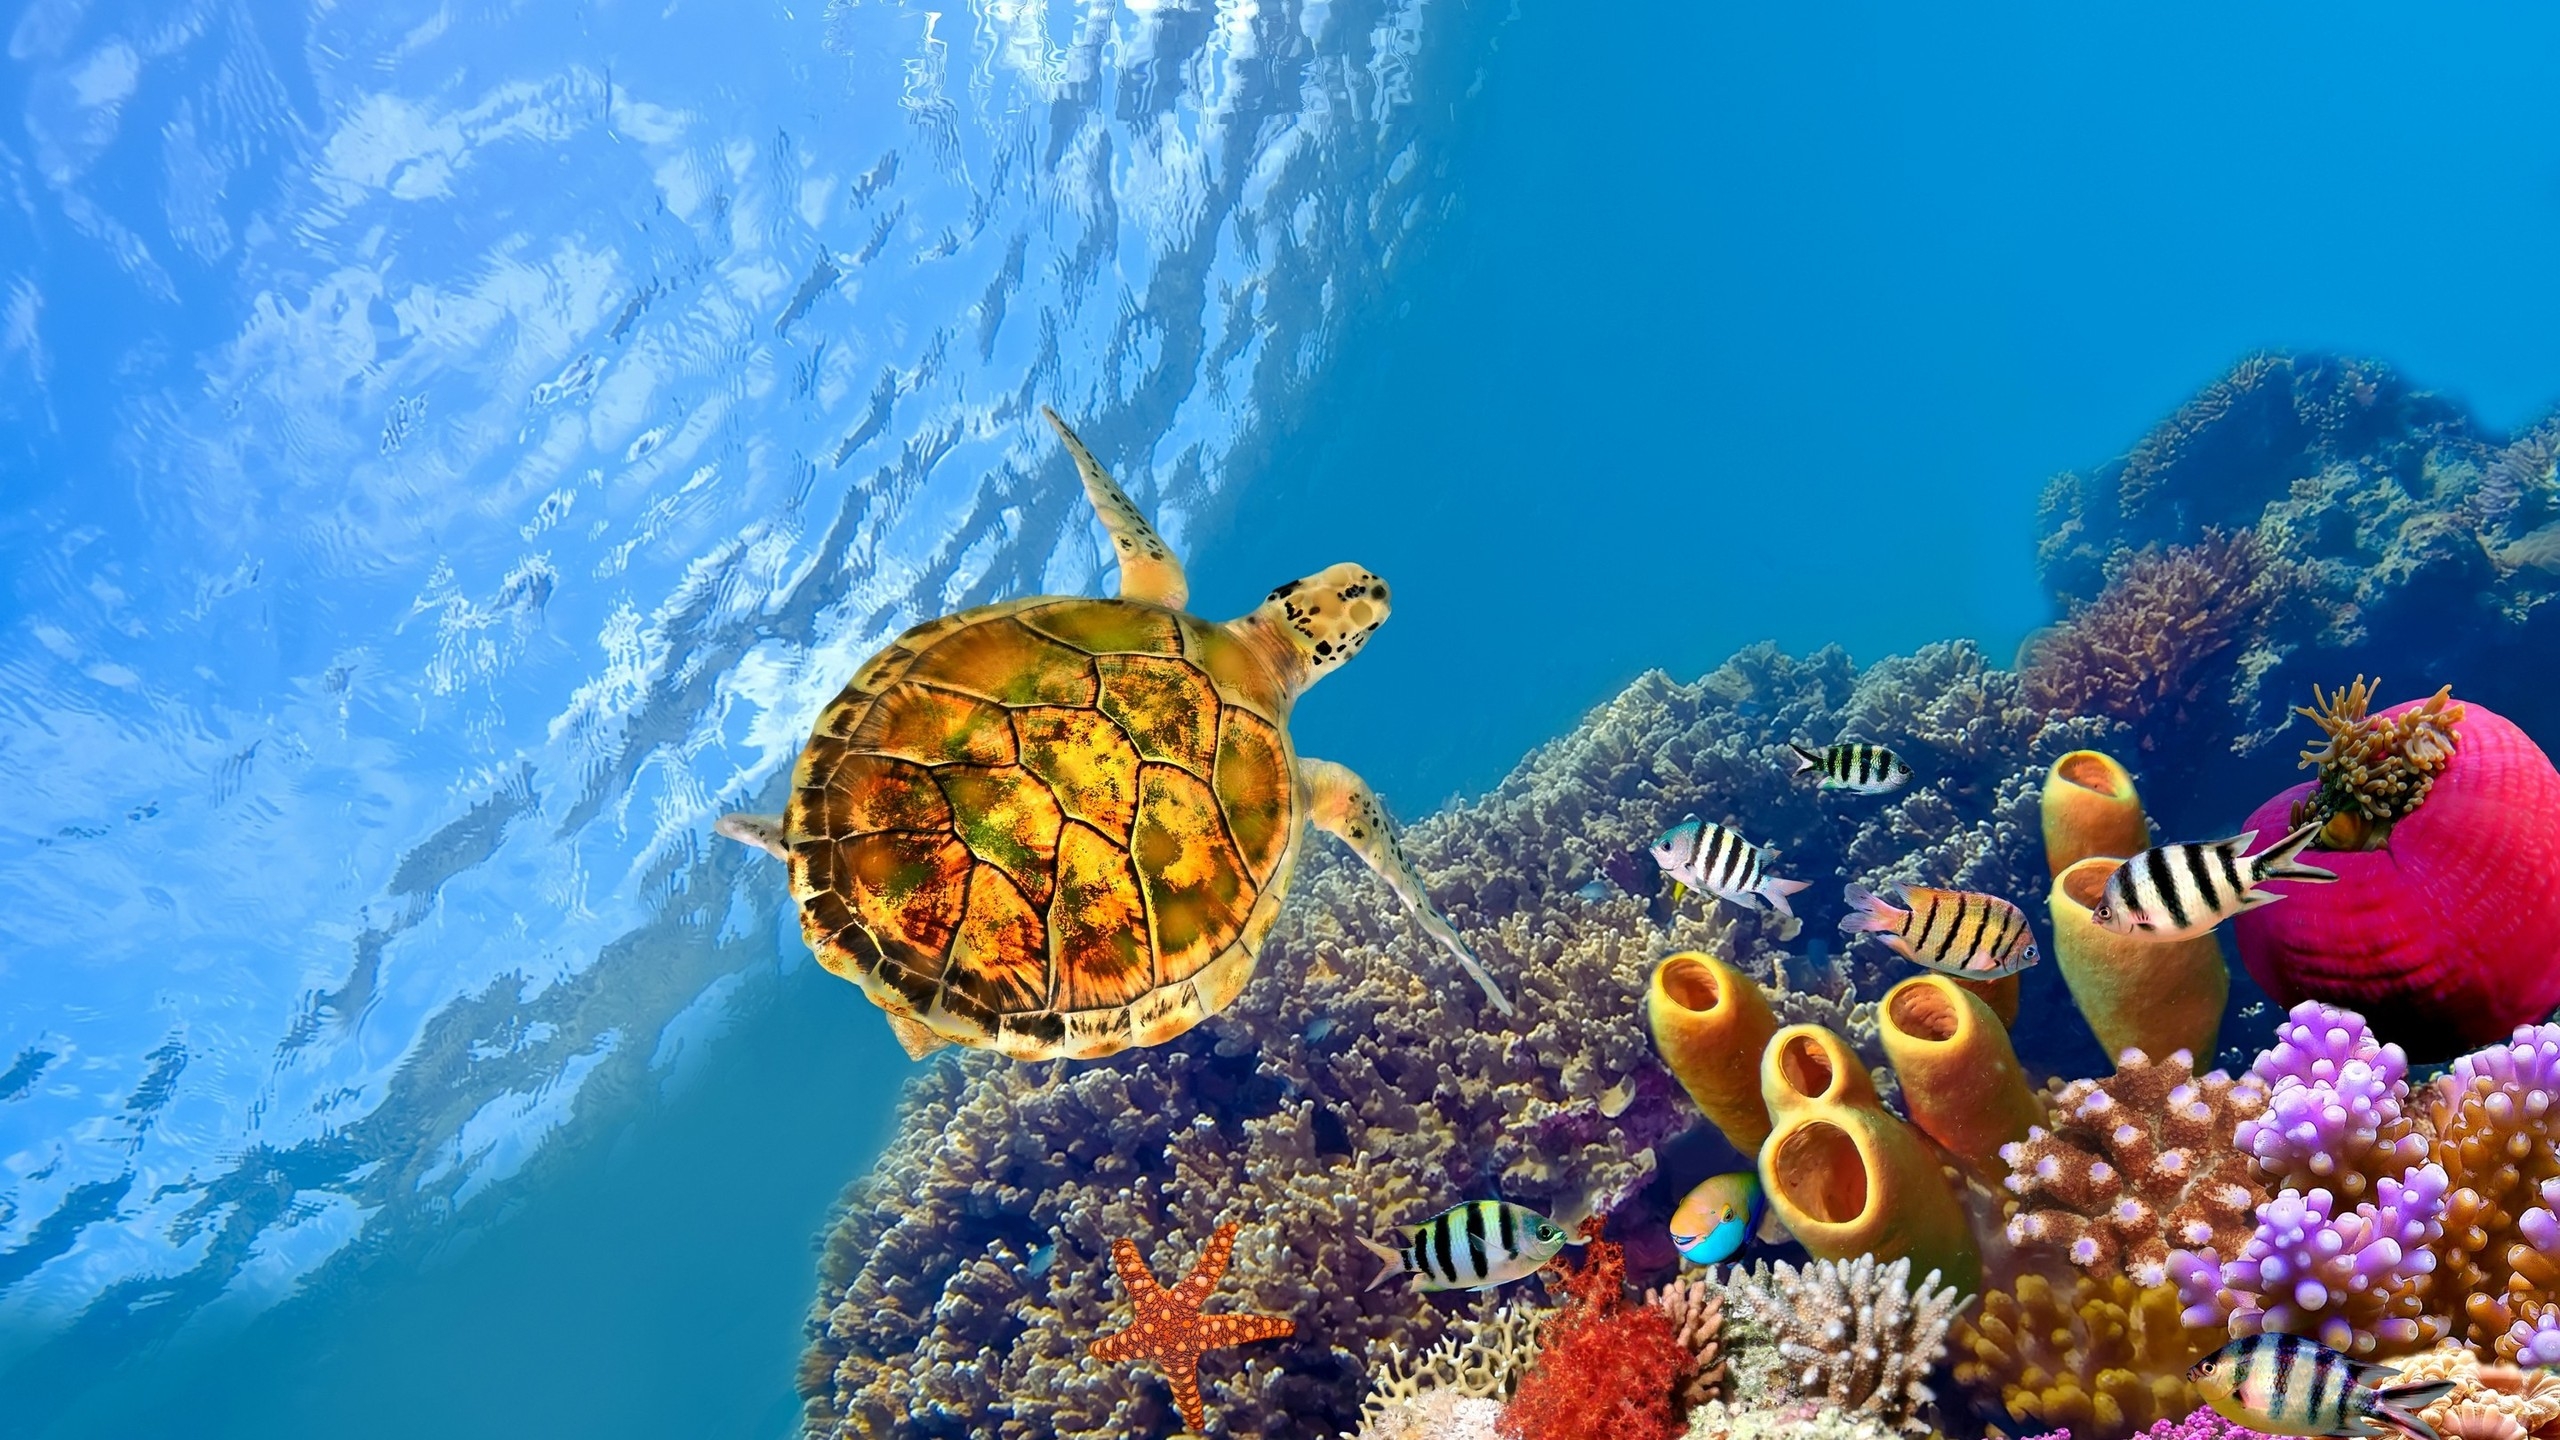 Turtle Underwater for 2560x1440 HDTV resolution